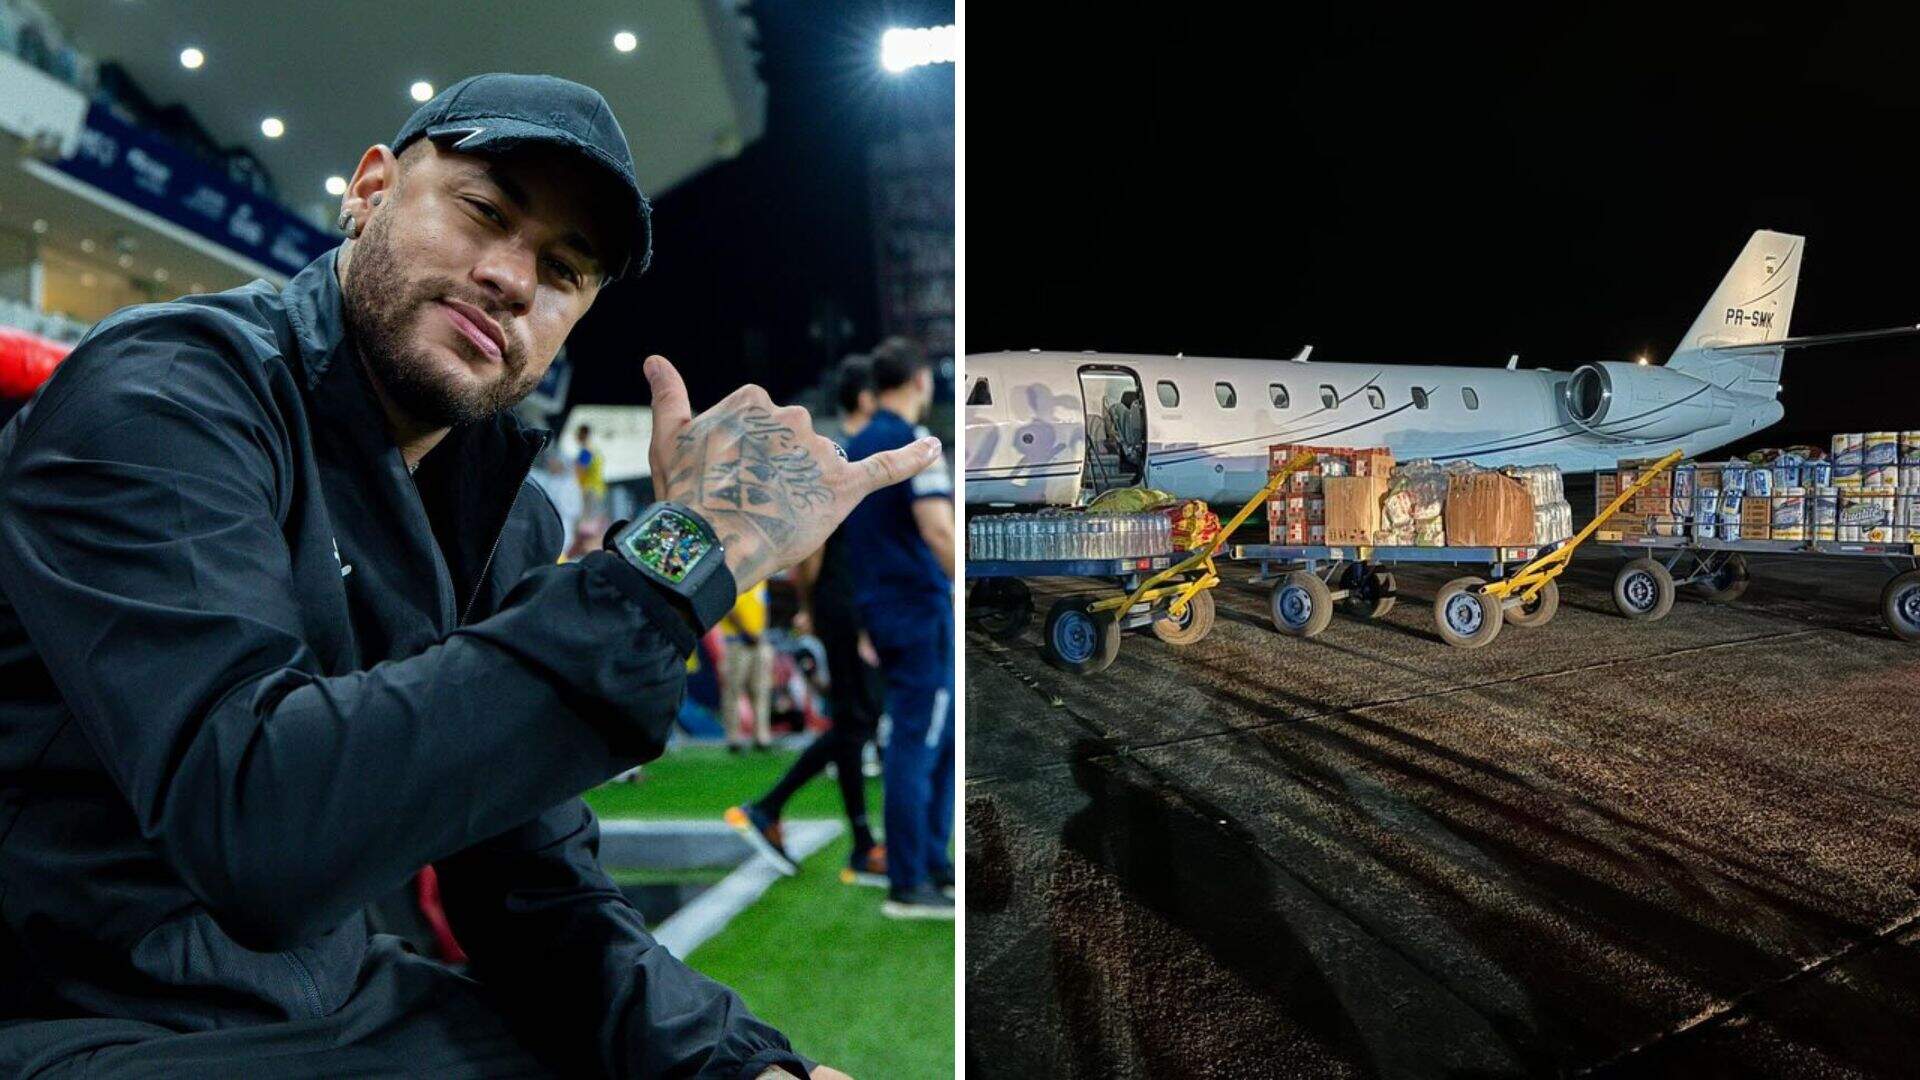 Neymar Jr. incentiva doações ao Rio Grande do Sul: “Pelo coração e não por engajamento” - Metropolitana FM